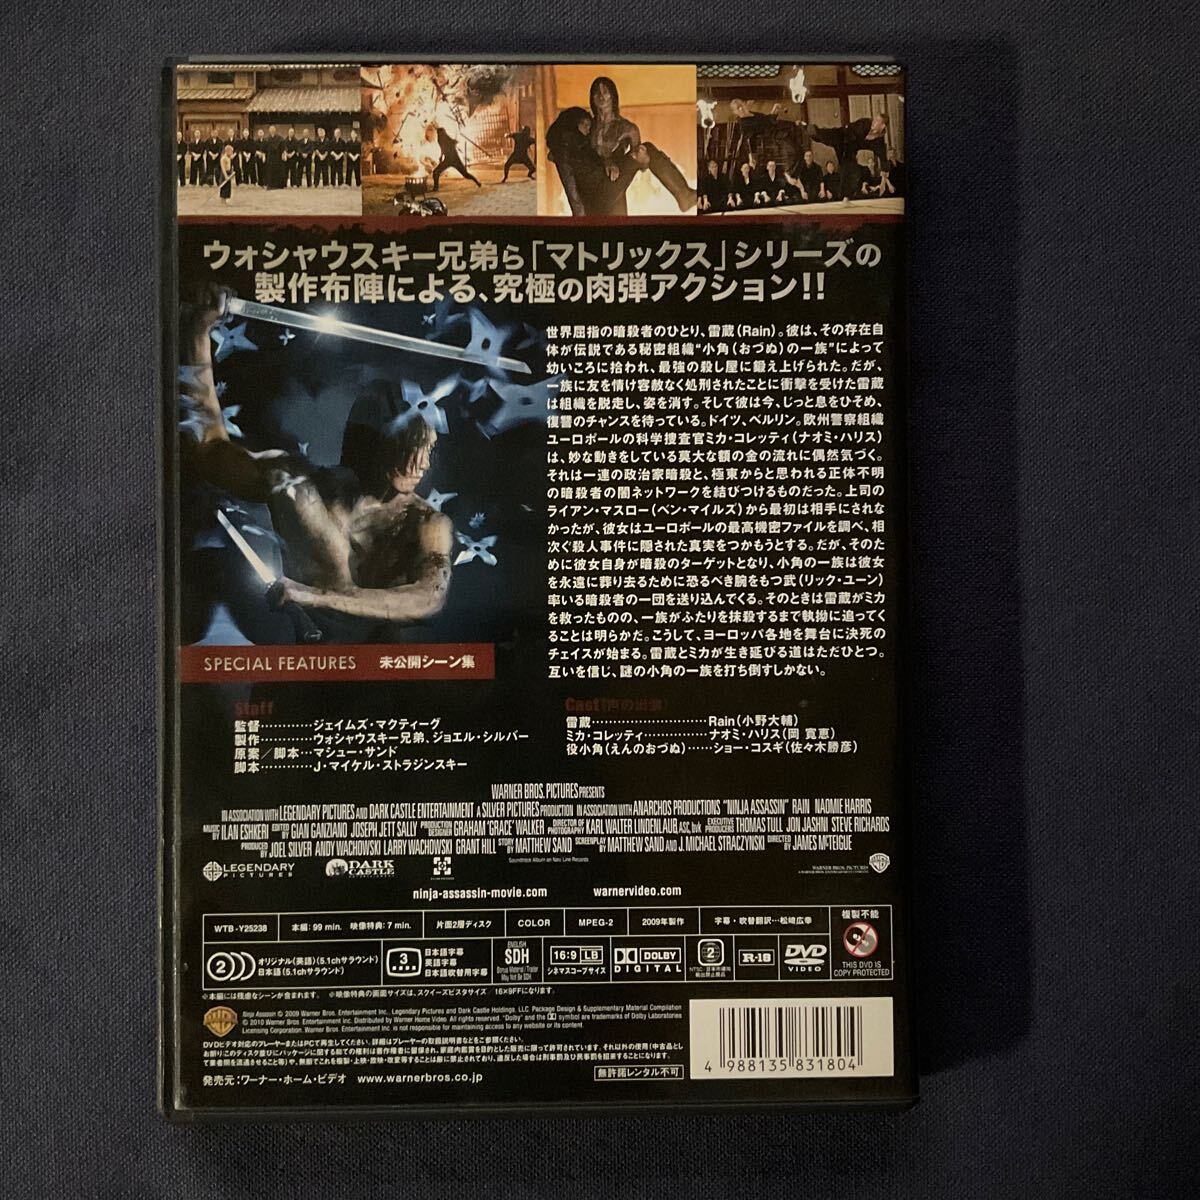 【セル】DVD『ニンジャ・アサシン』 Rain ナオミ・ハリス ショー・コスギの画像2